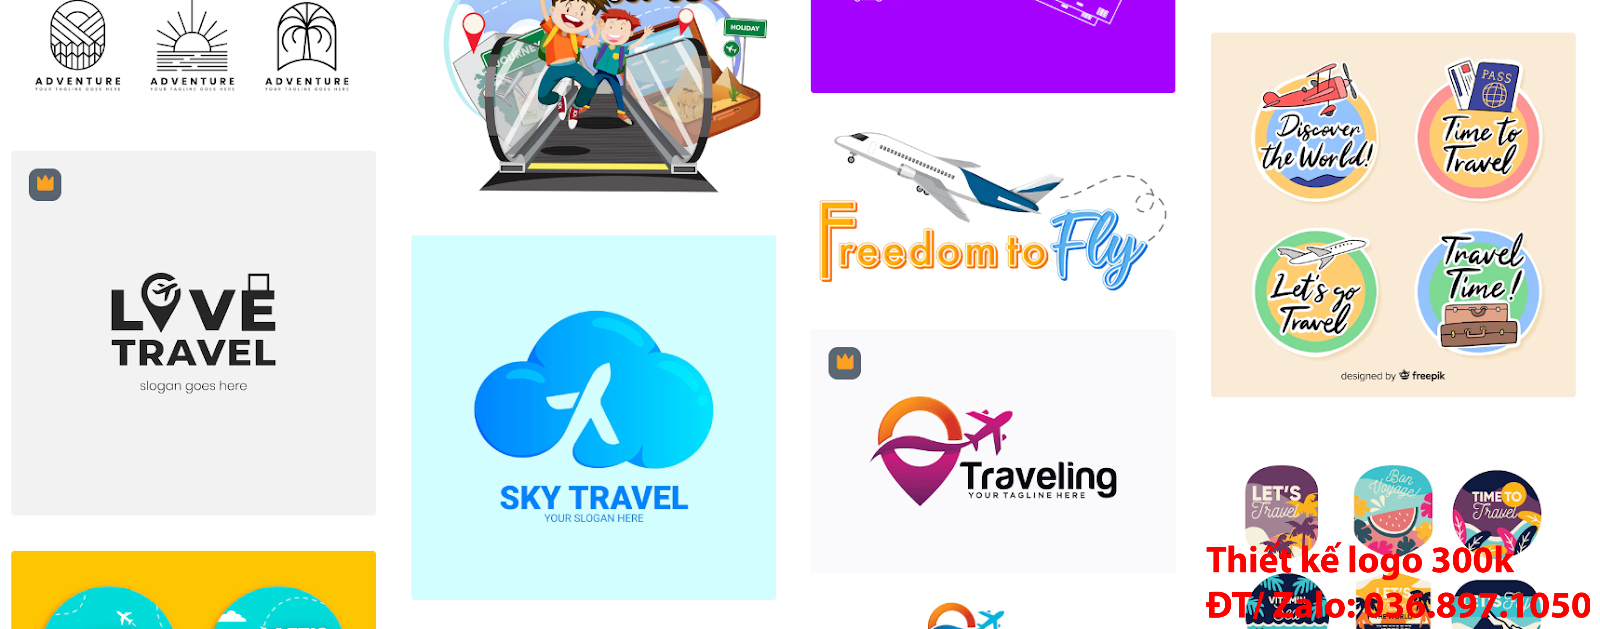 Mẫu Thiết Kế Logo công ty du lịch tour đẹp giá rẻ online uy tín chất lượng cao nhất